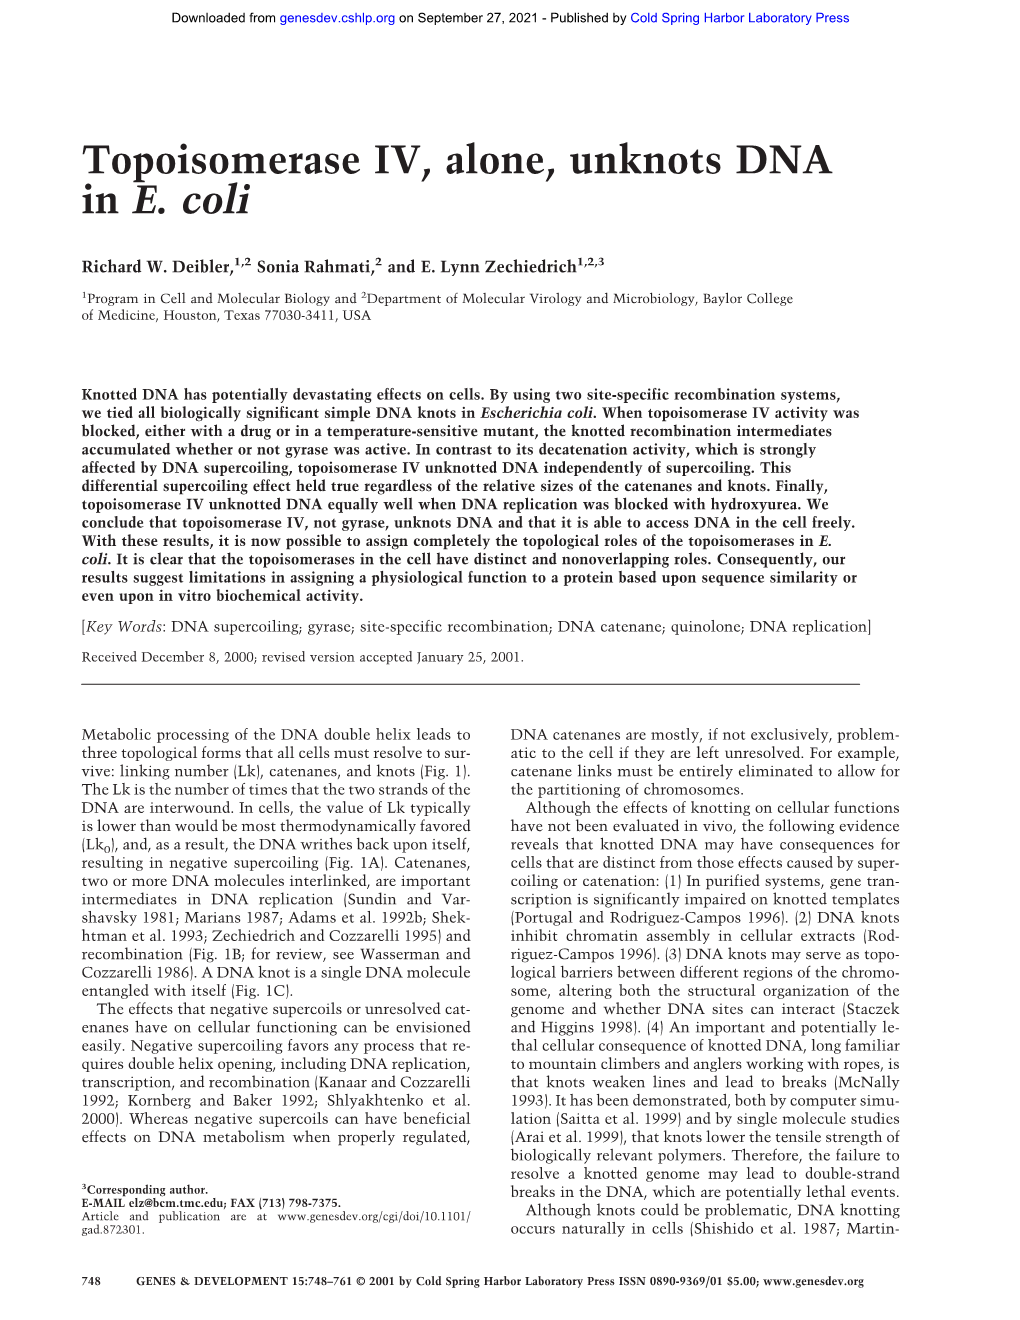 Topoisomerase IV, Alone, Unknots DNA in E. Coli